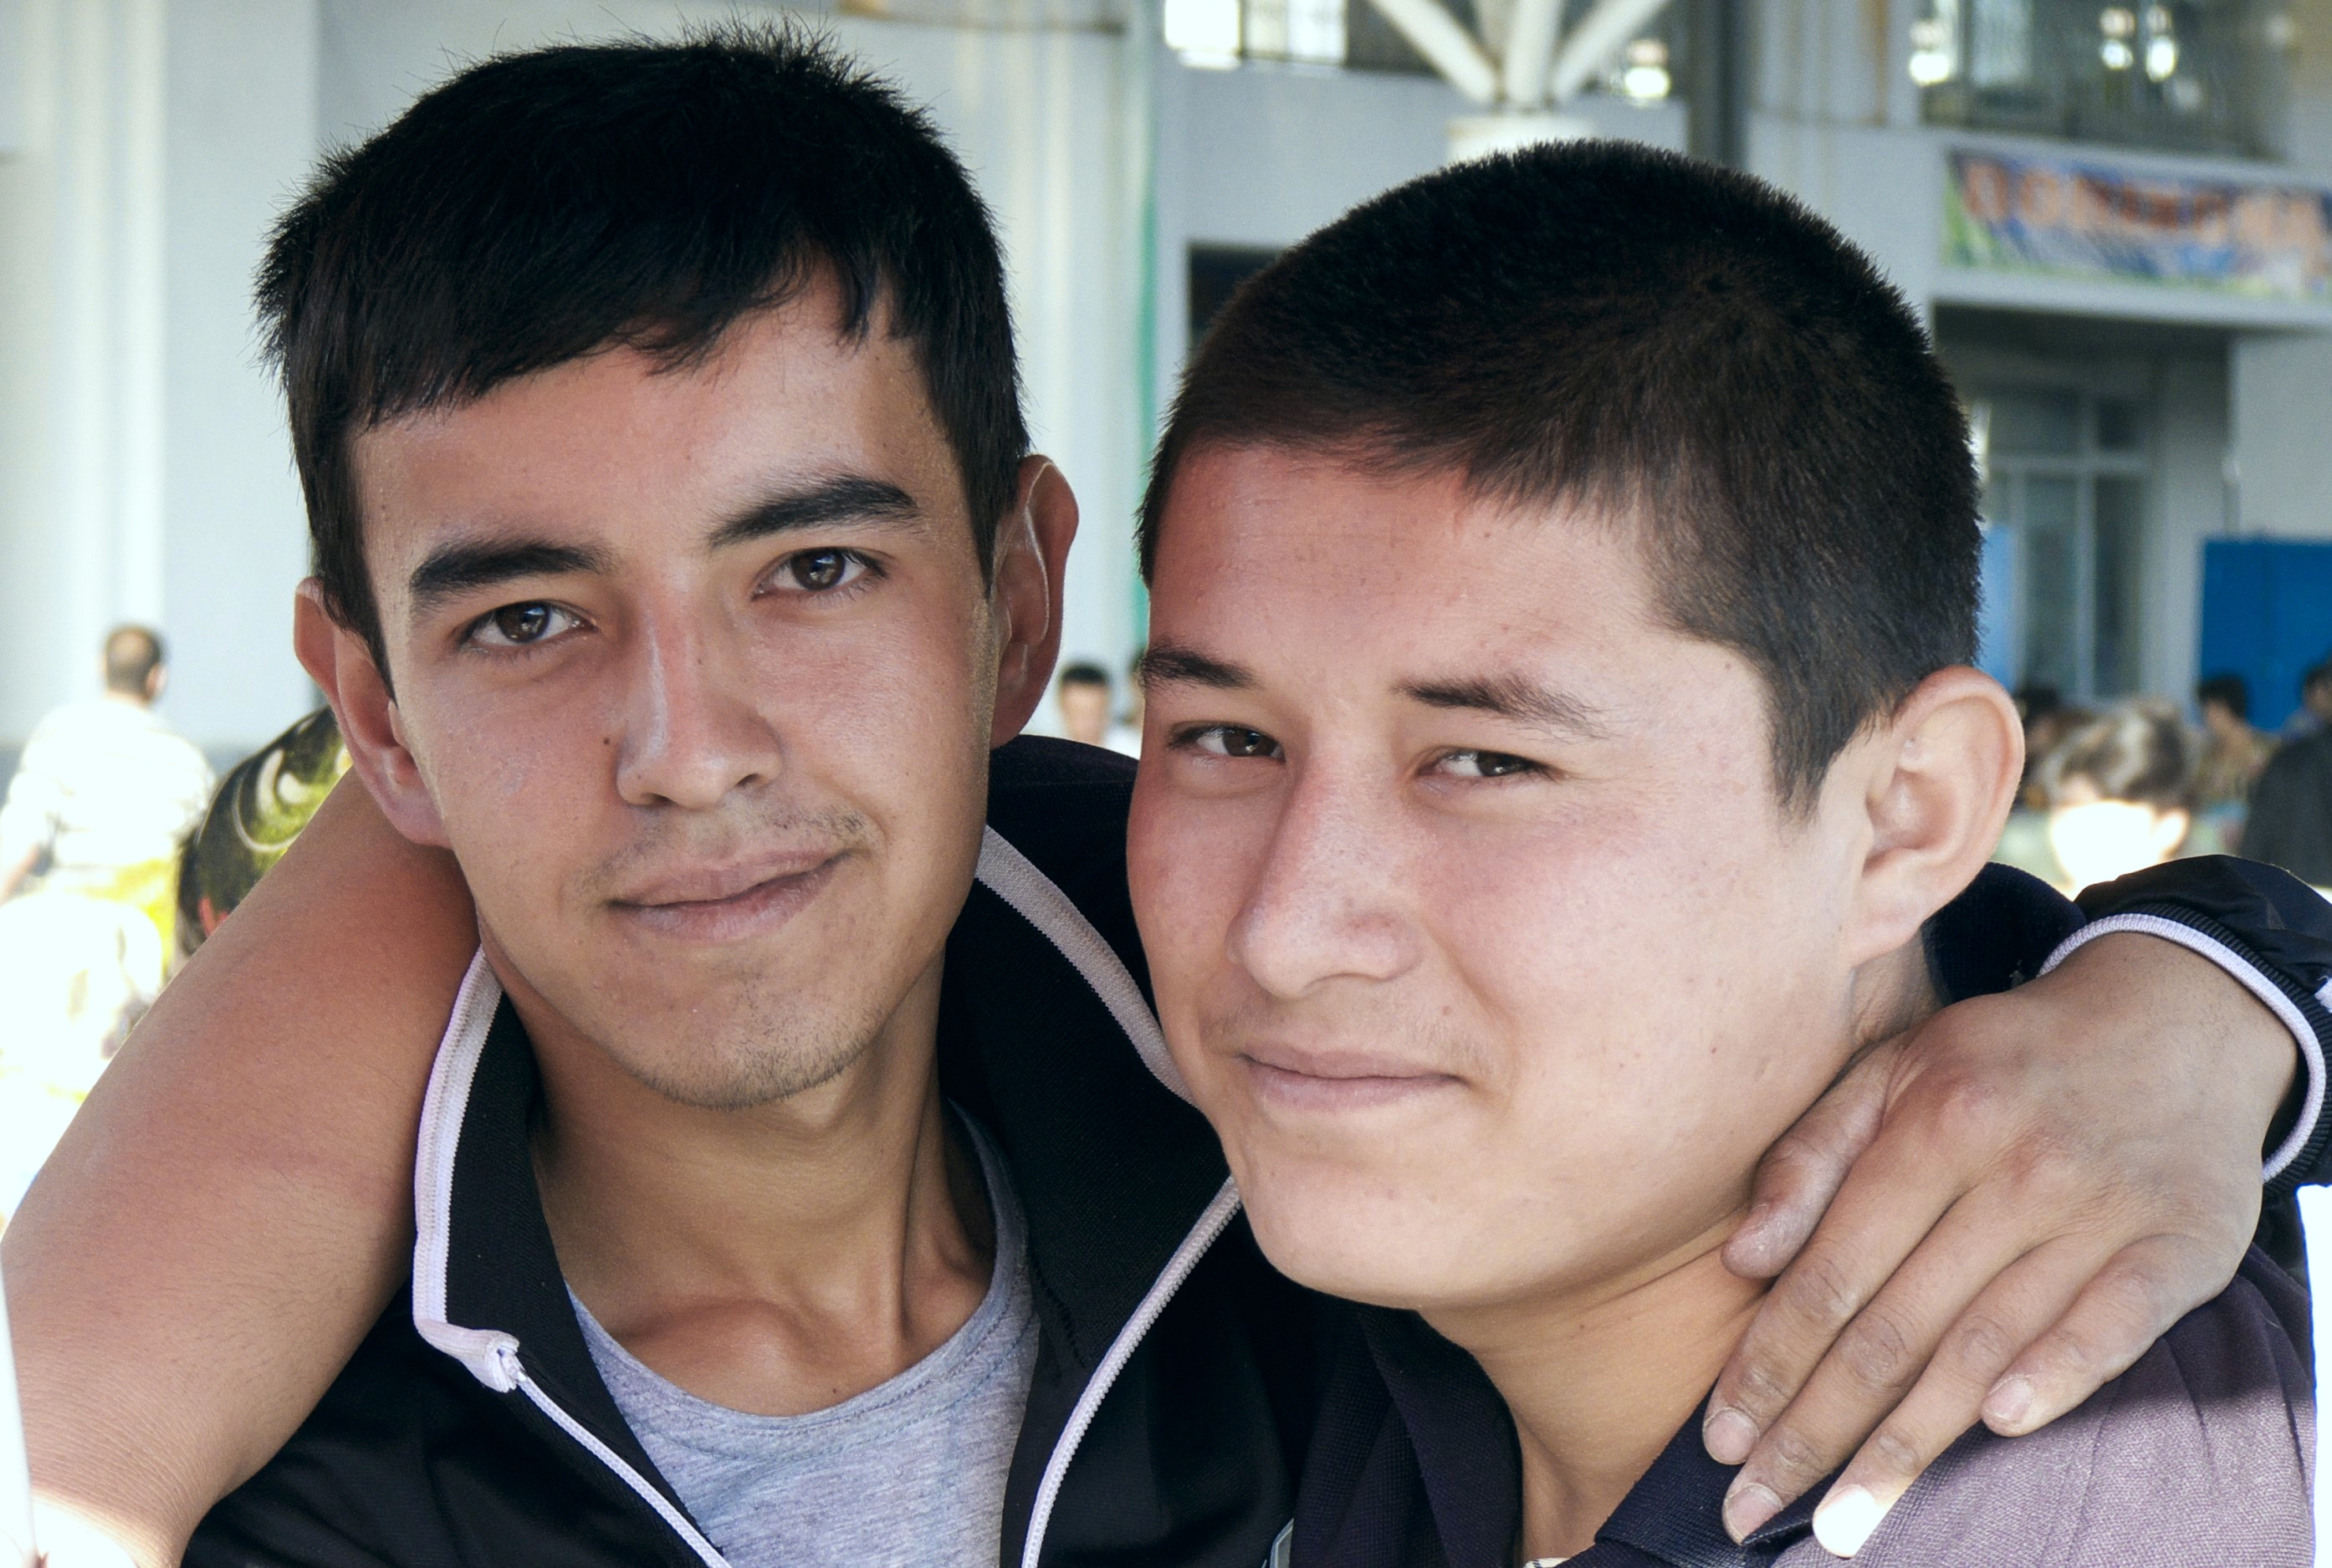 Узбекская 17. Узбеки молодые. Узбекистан мужчины. Узбекистанские люди. Фотография узбека.